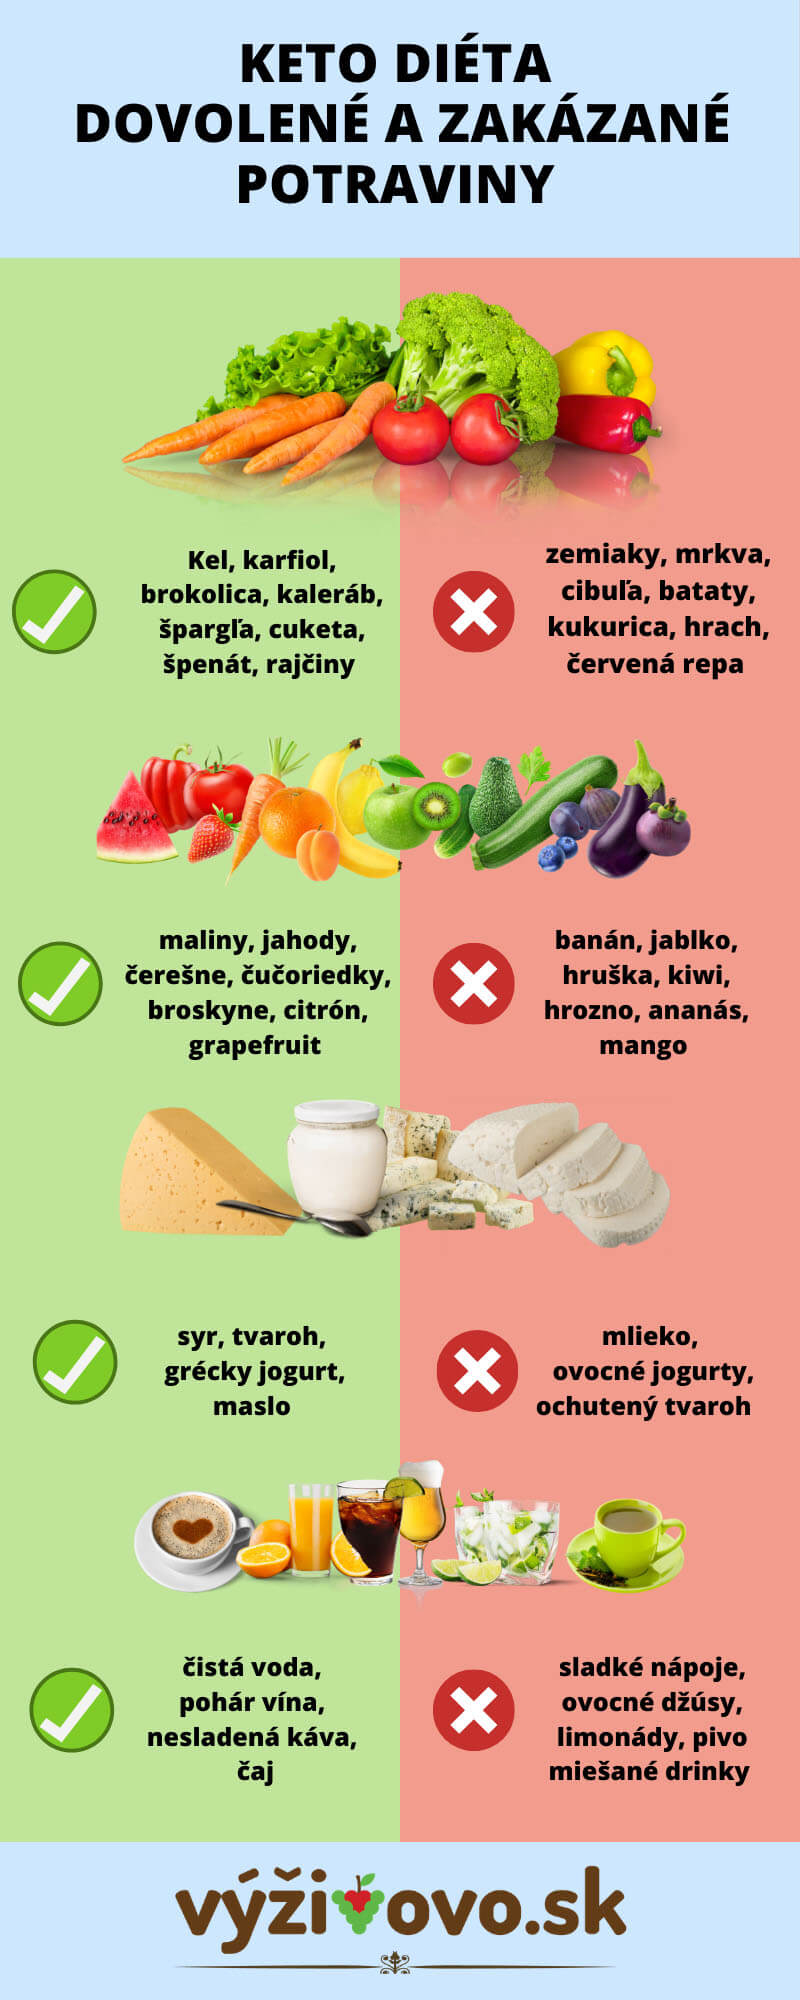 Infografika - povolené a zakázané potraviny pri keto diéte